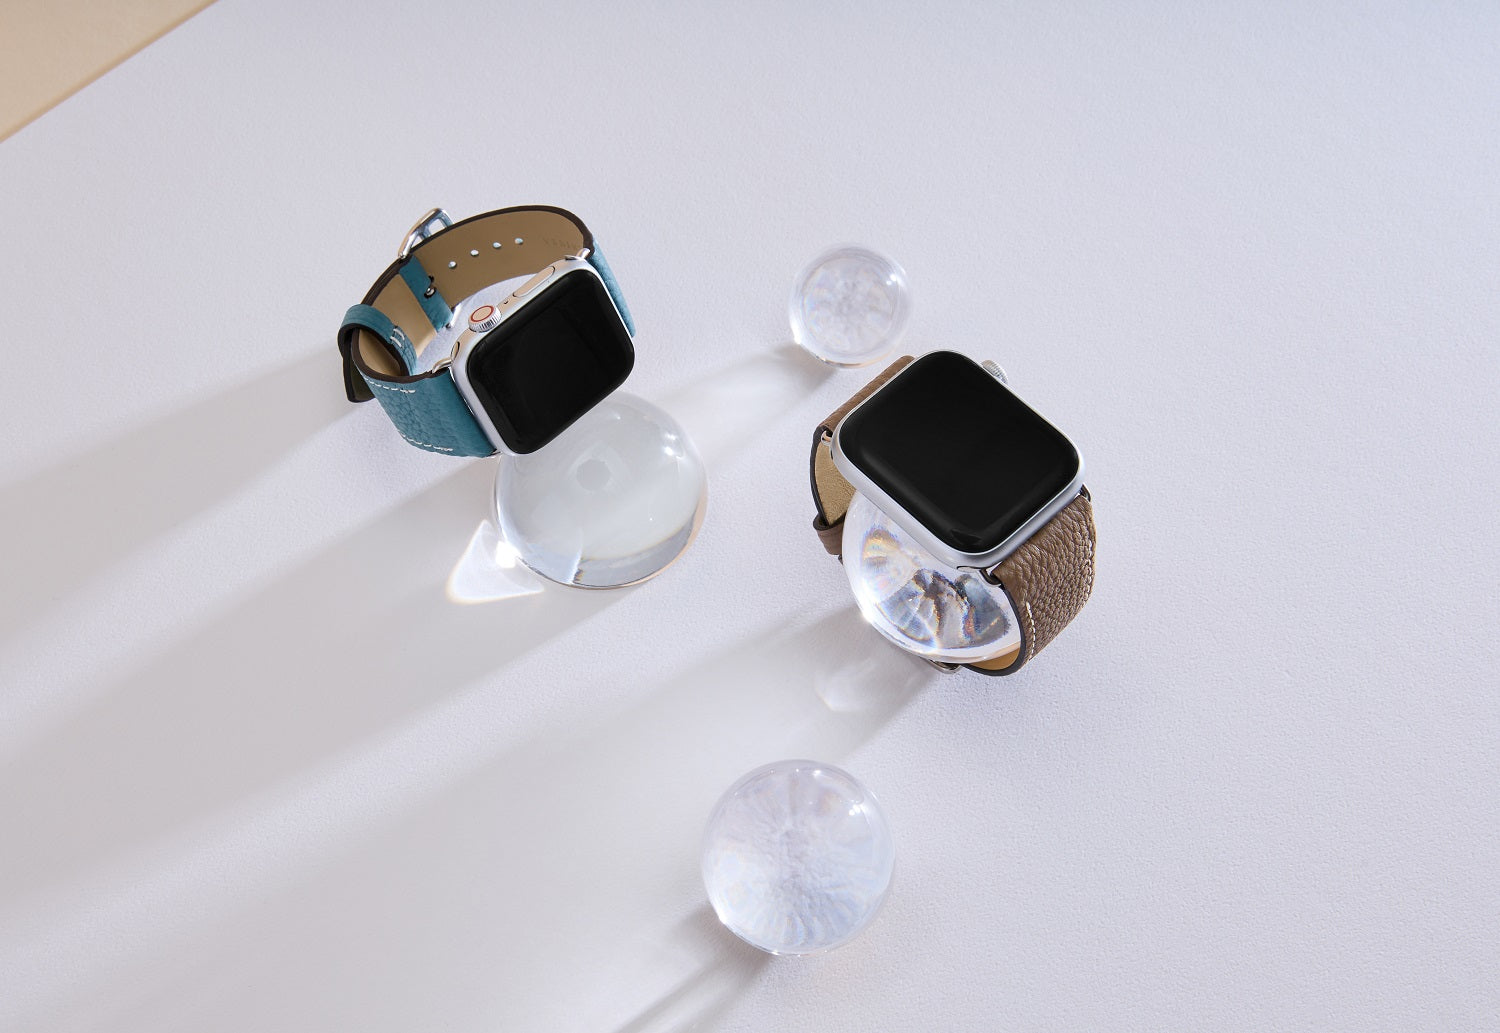 Apple Watch 가죽 밴드【42 mm/44 mm/45 mm/49 mm, M/L 사이즈】 (어댑터：실버)